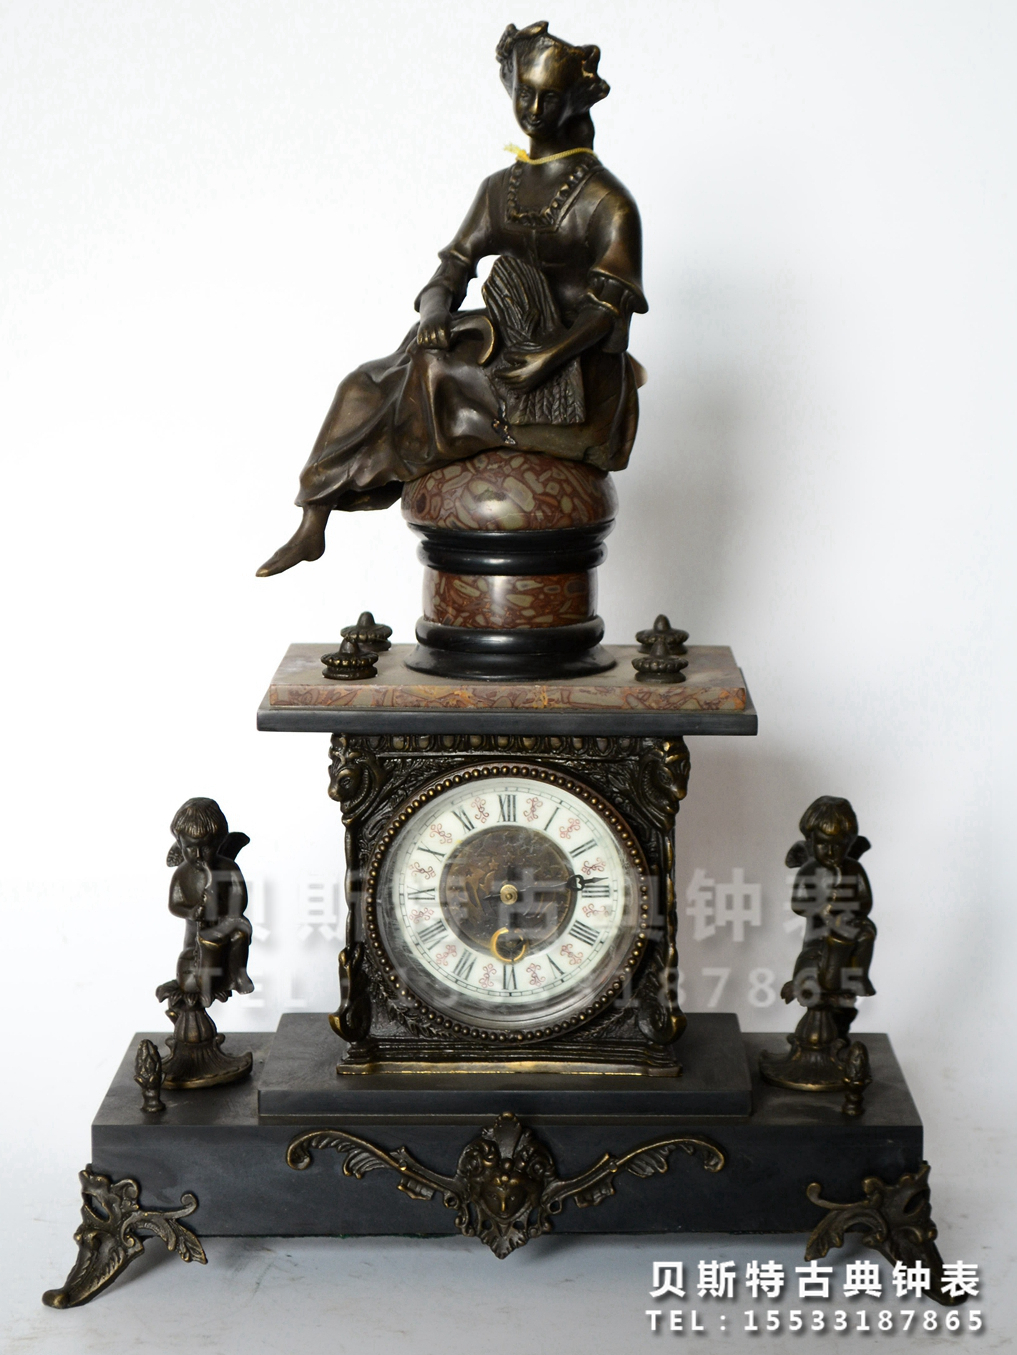 老式上弦理石铜铸座钟|机械静音钟表|仿古西洋家居装饰客厅挂钟